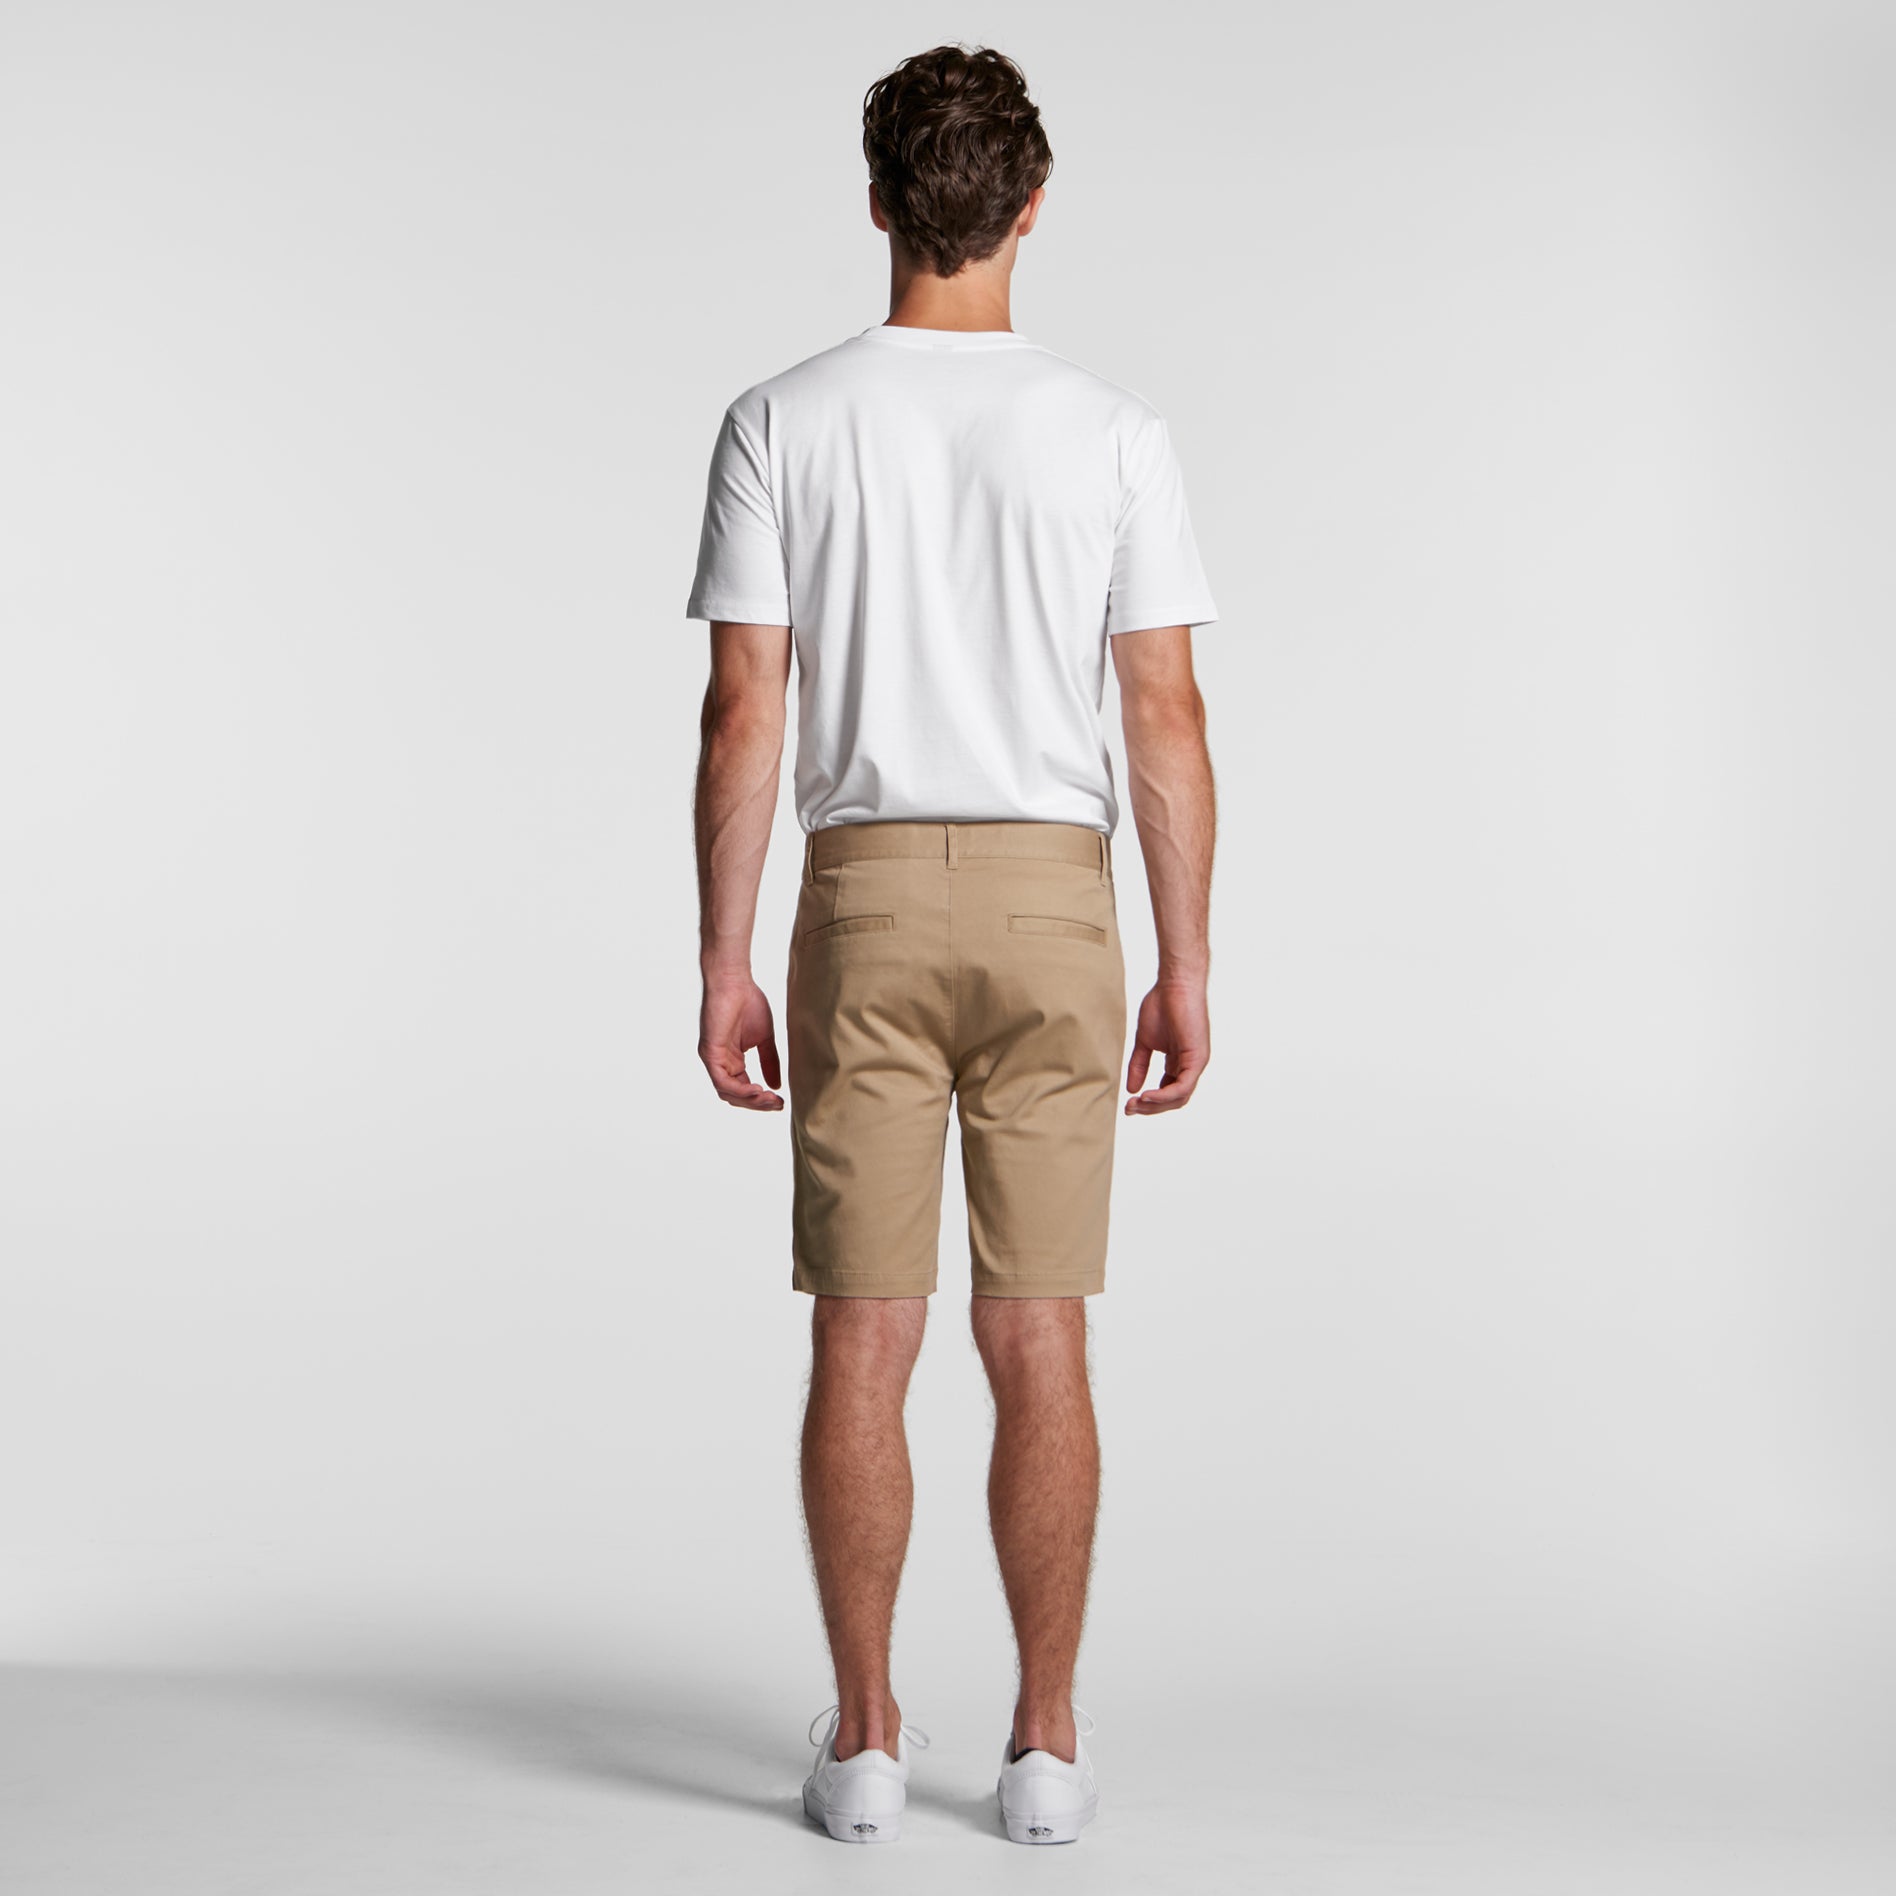 Plain shorts